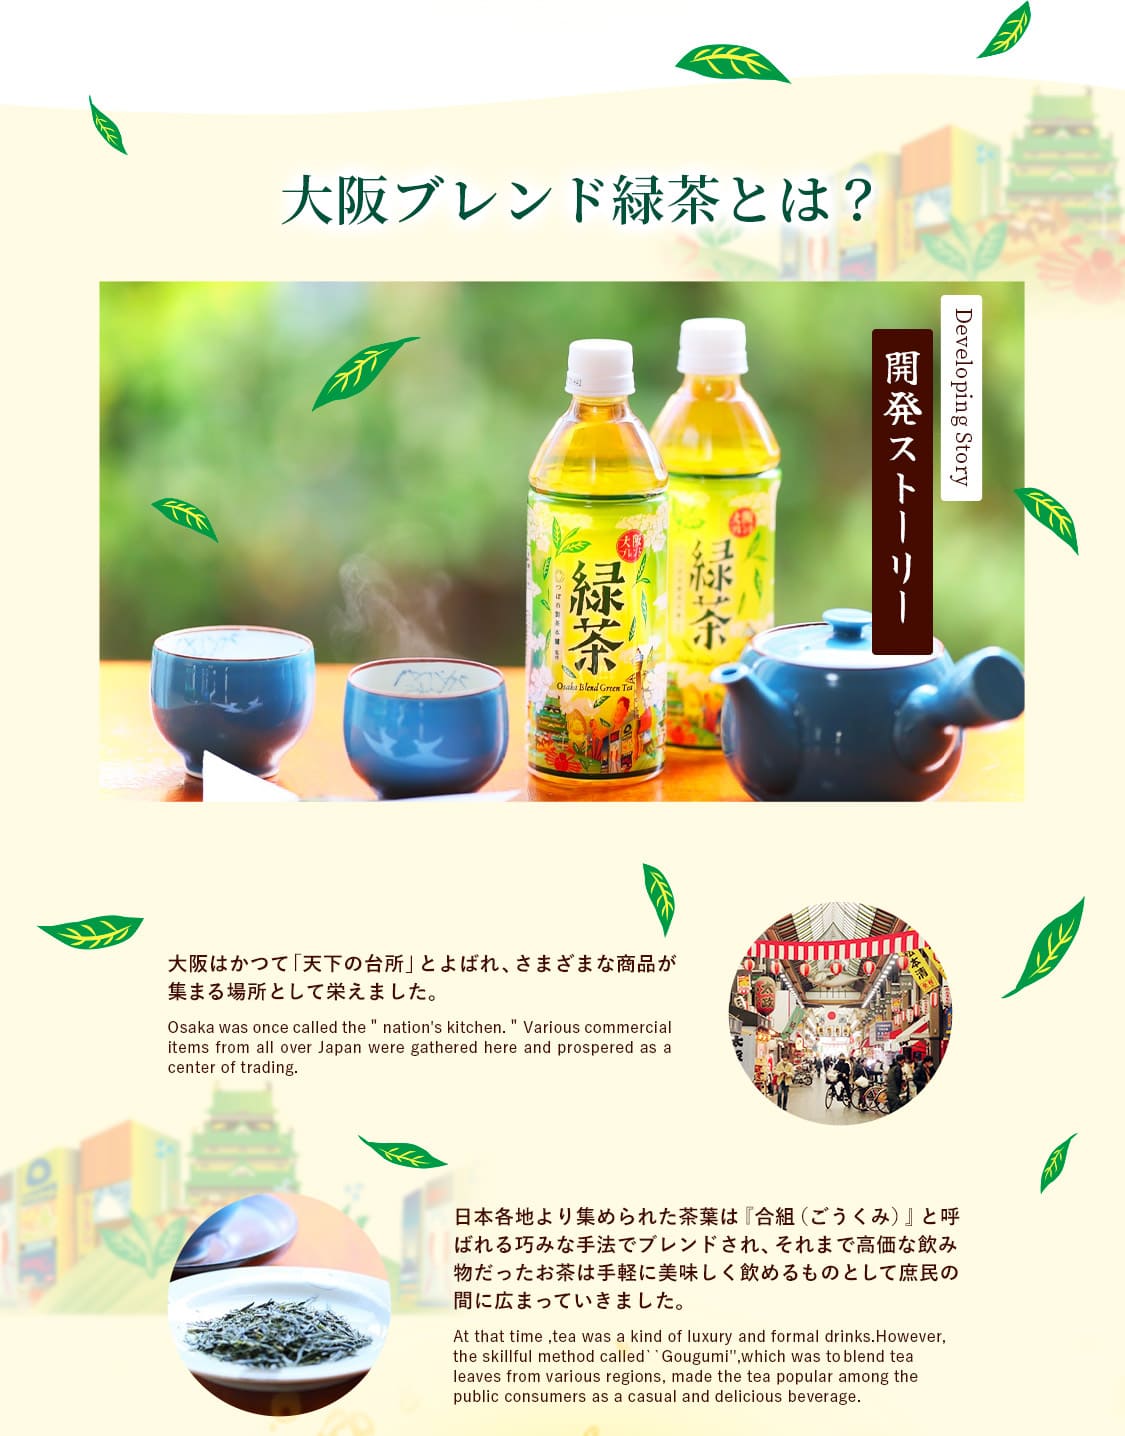 大阪ブレンド緑茶とは?